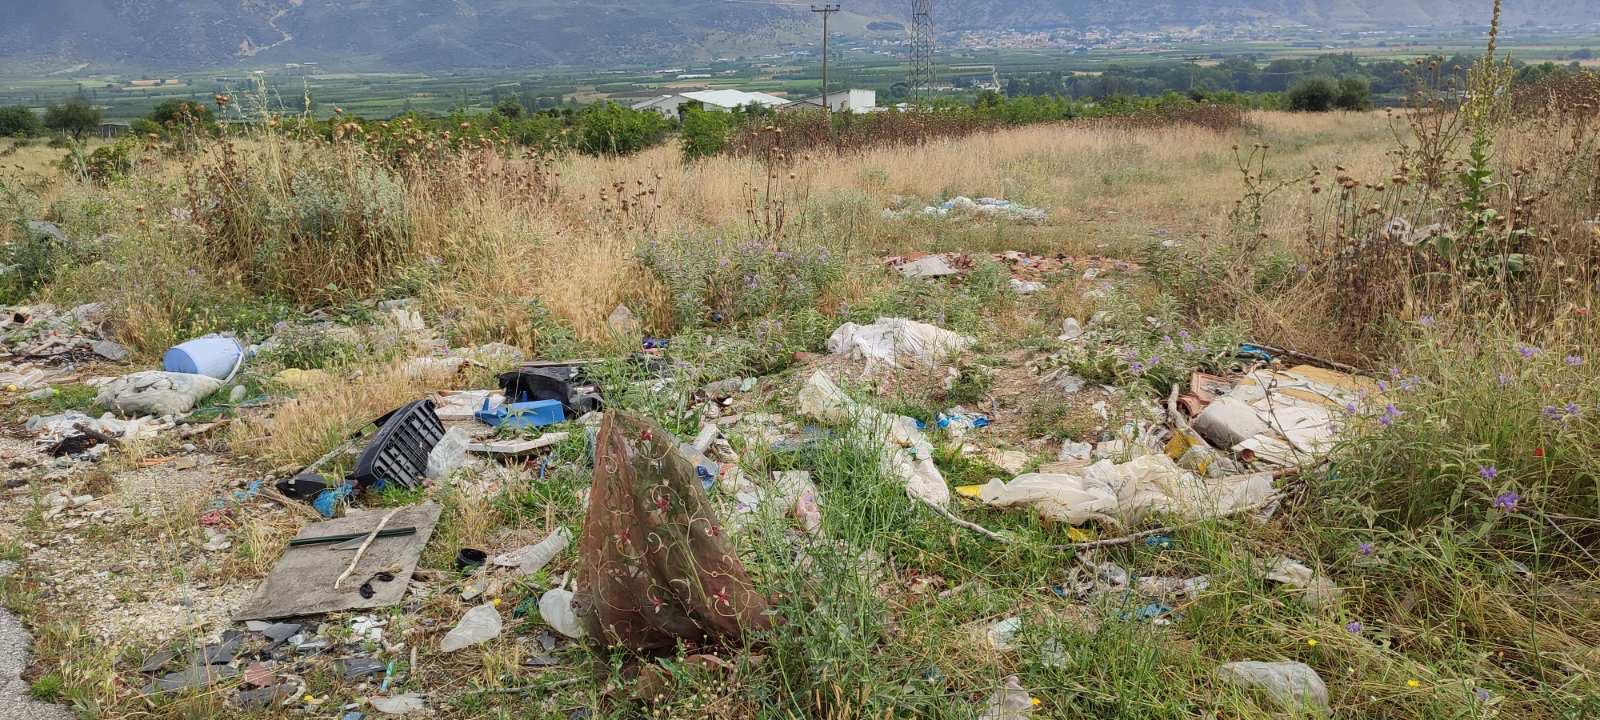 Καθαρίστηκε παράνομη χωματερή στο Αργυροπούλι Τυρνάβου – Μήνυση κατ’ αγνώστων